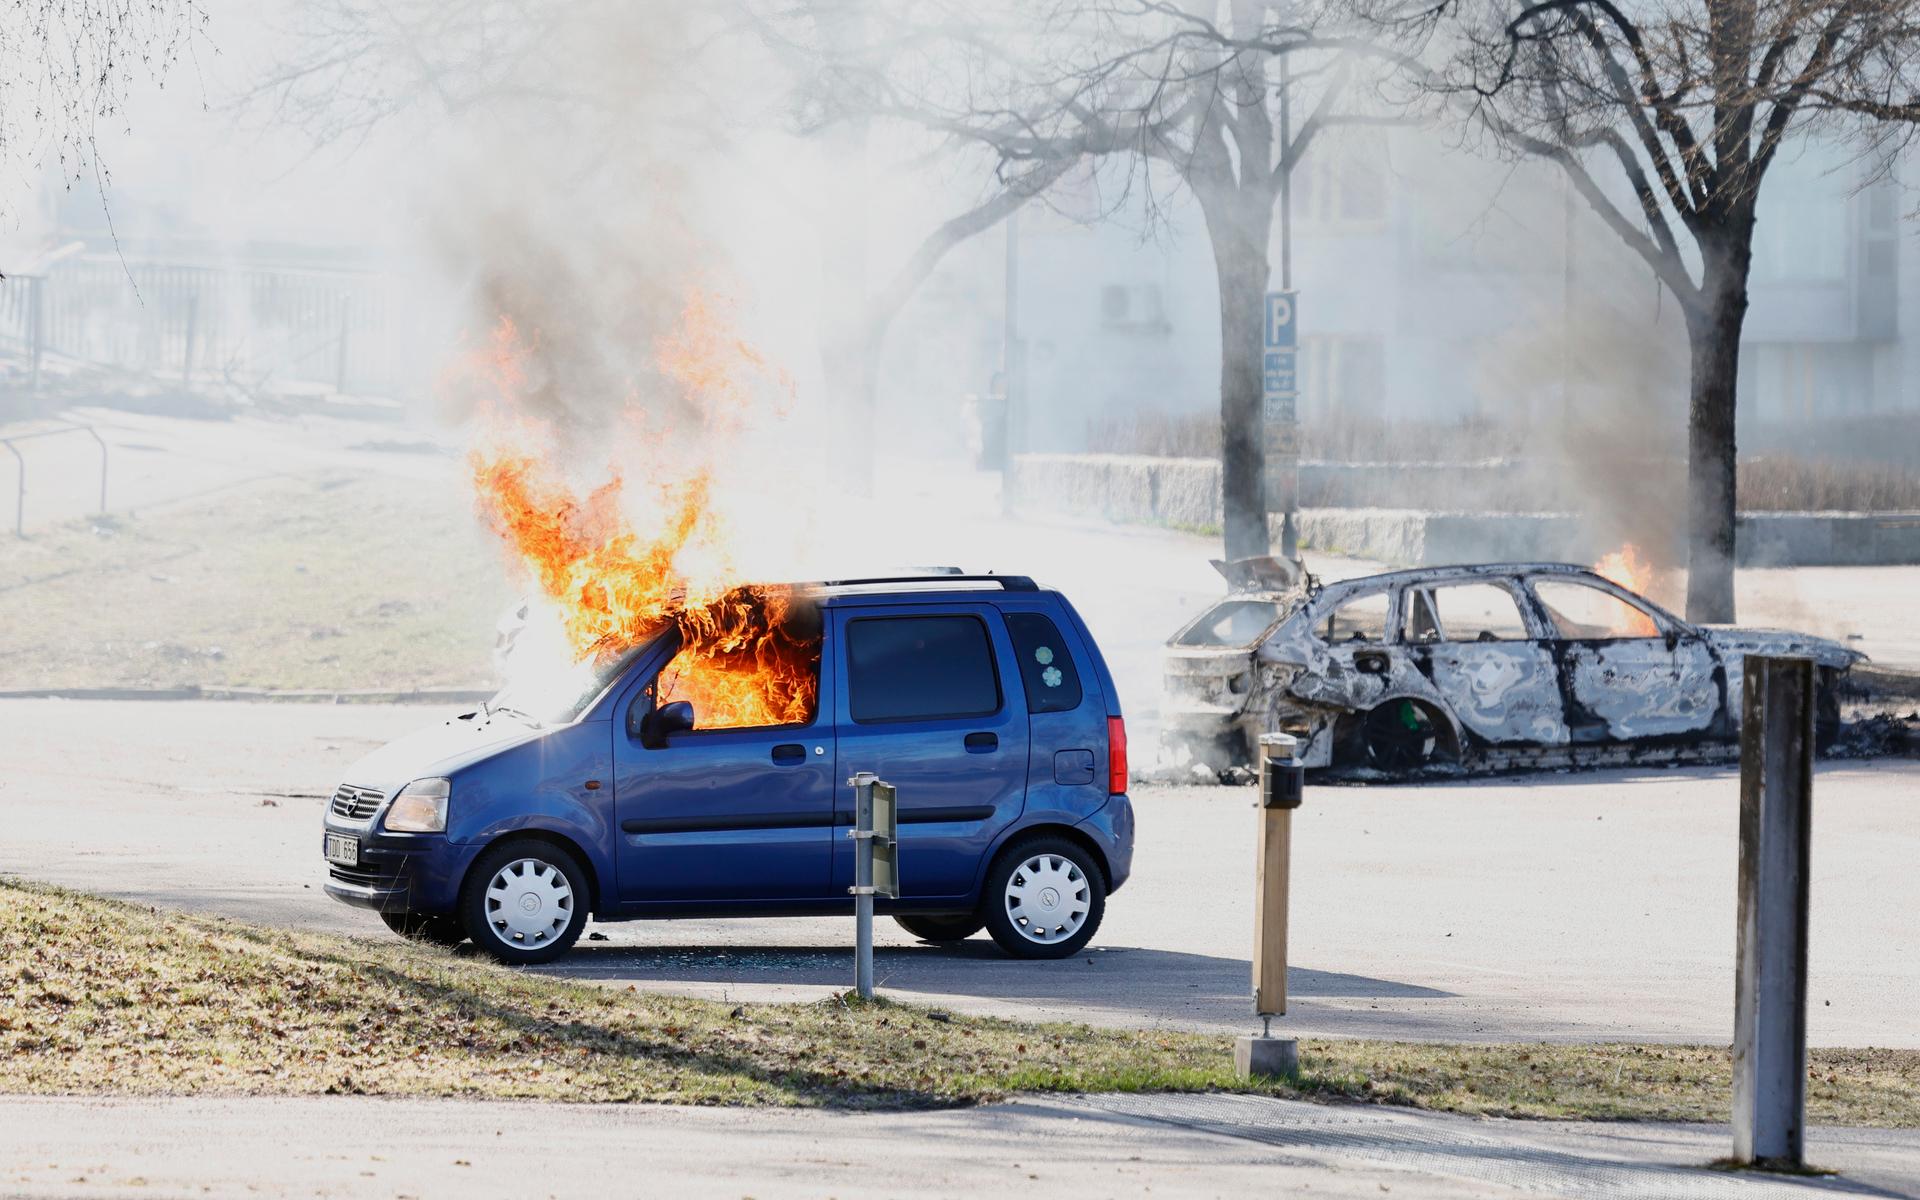 Två bilar brinner på en parkering vid Ringdansen centrum, i samband med upplopp i Navestad i Norrköping på påskdagen.Oroligheterna utlöstes av att den högerextrema provokatören Rasmus Paludan har sagt att han ska återvända till Östergötland för nya demonstrationer under dagen.